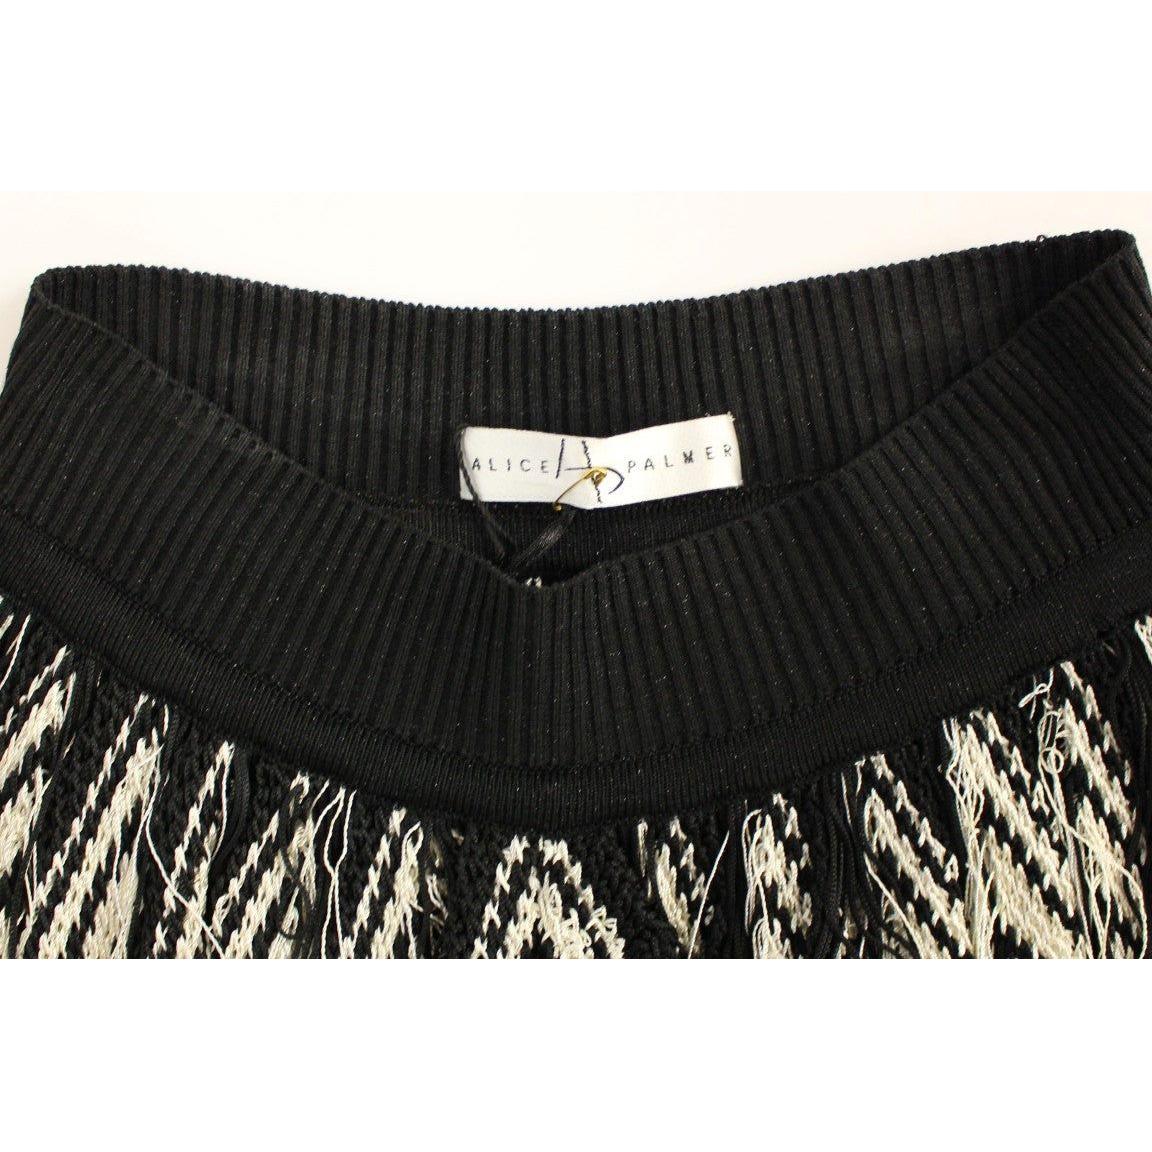 Alice PalmerChic Black & White Knitted SkirtMcRichard Designer Brands£259.00